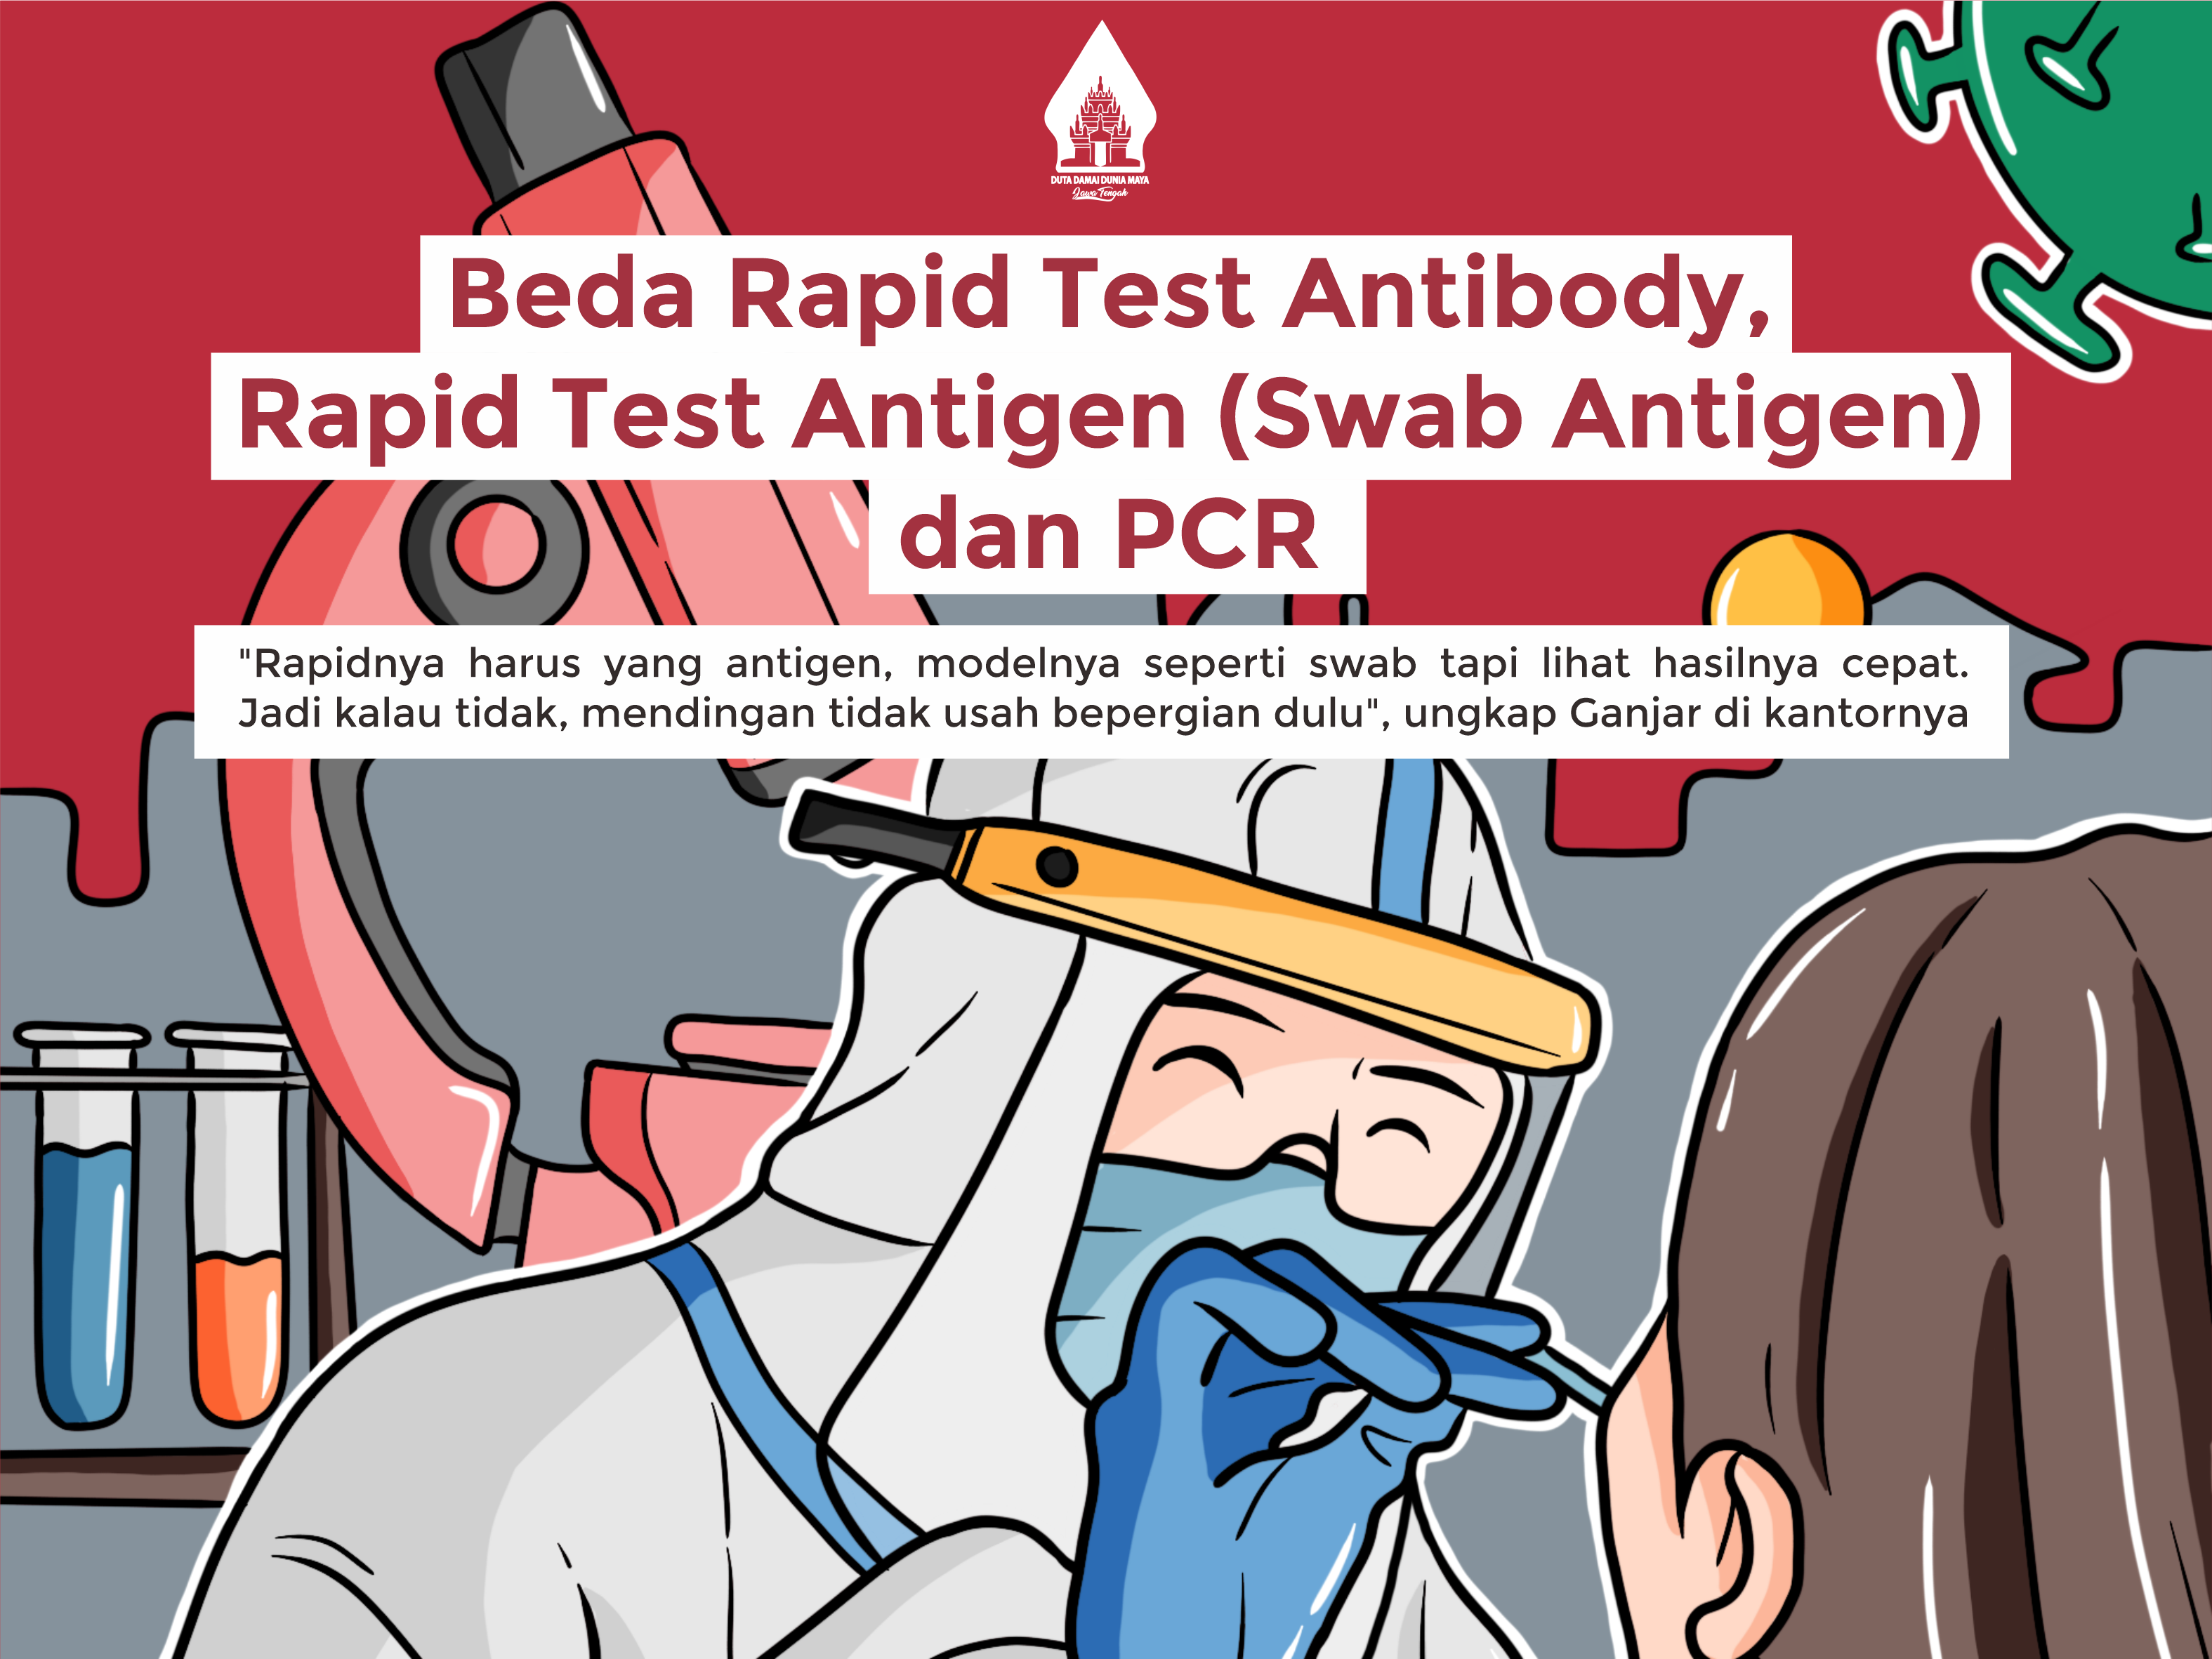 Beda Rapid Test Antibody, Rapid Test Antigen (Swab Antigen) dan PCR